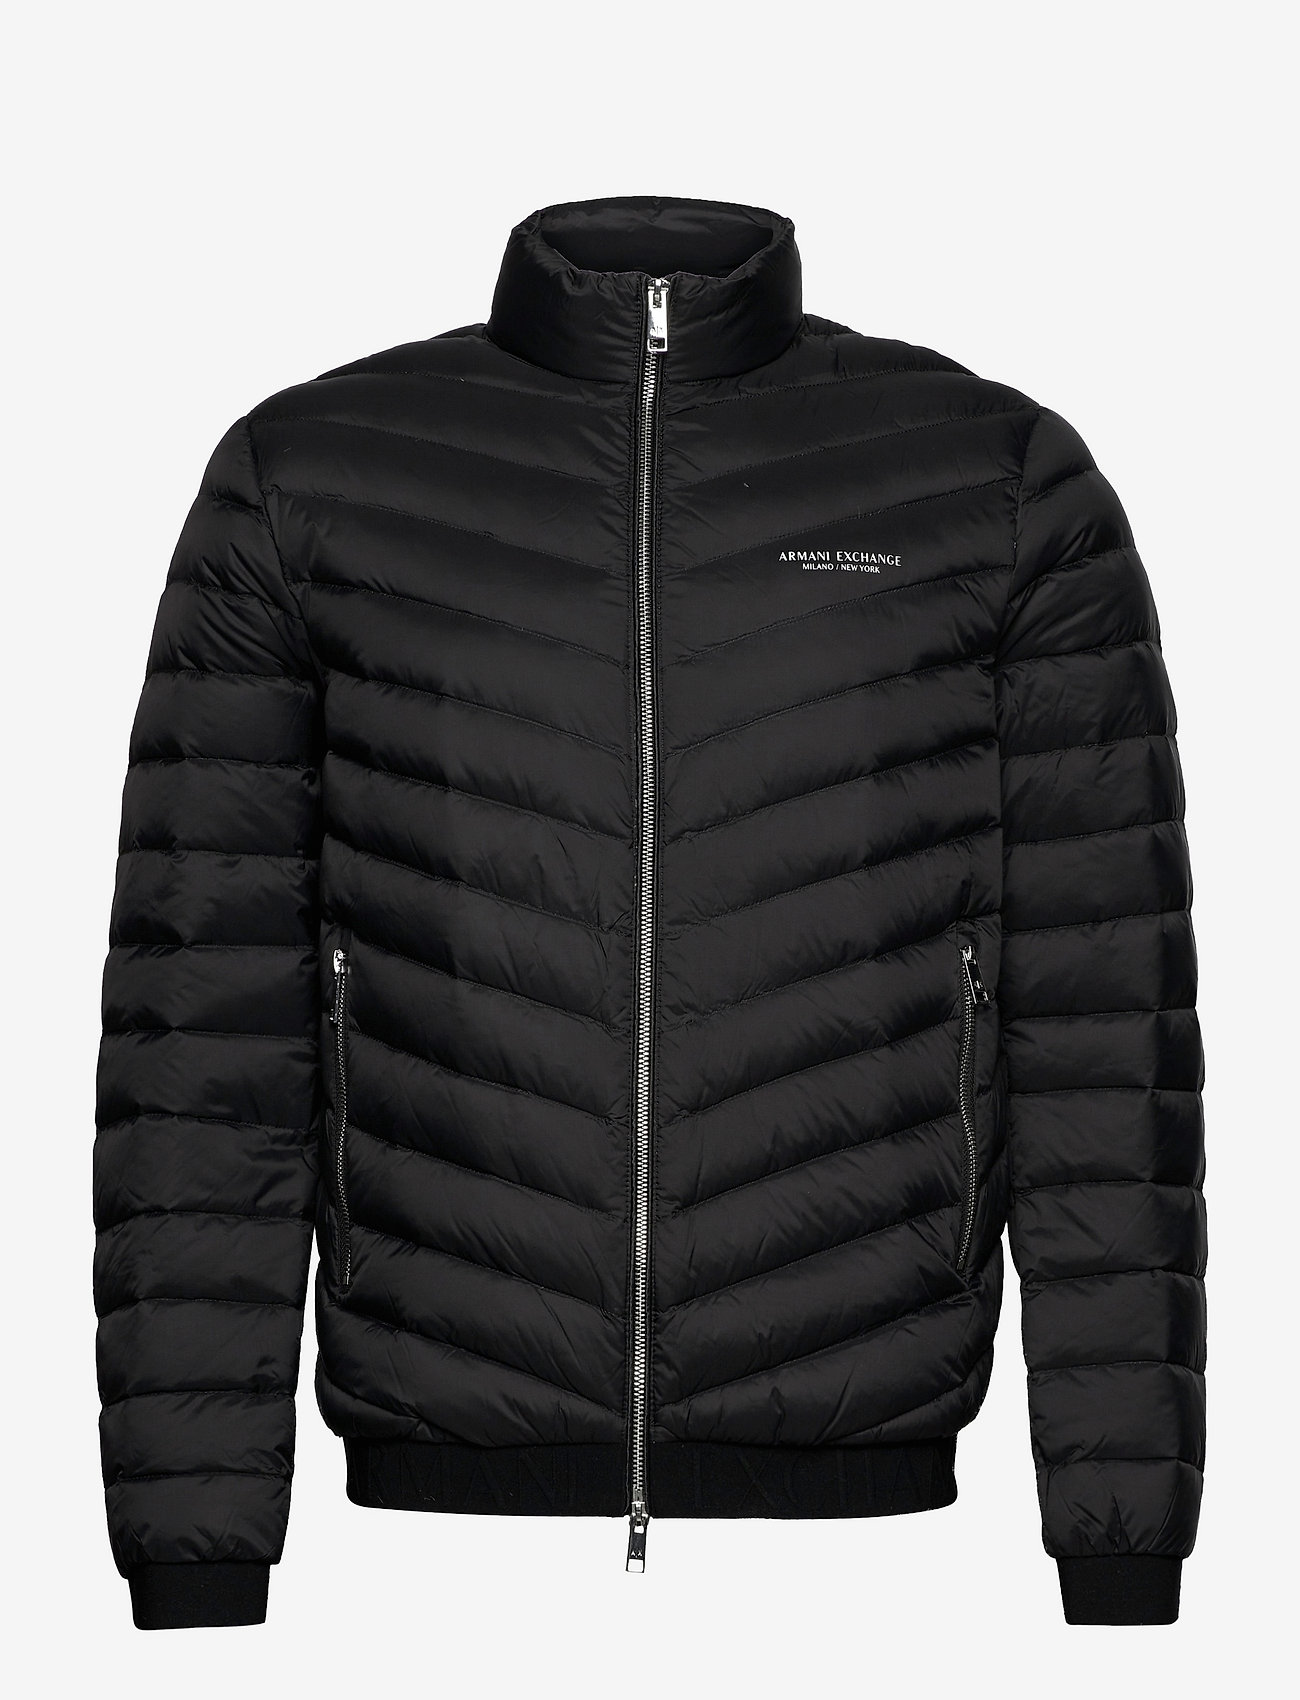 Armani Exchange Jacket - 1199 kr. Forede jakker fra Armani Exchange online på Boozt.com. Hurtig & nem retur